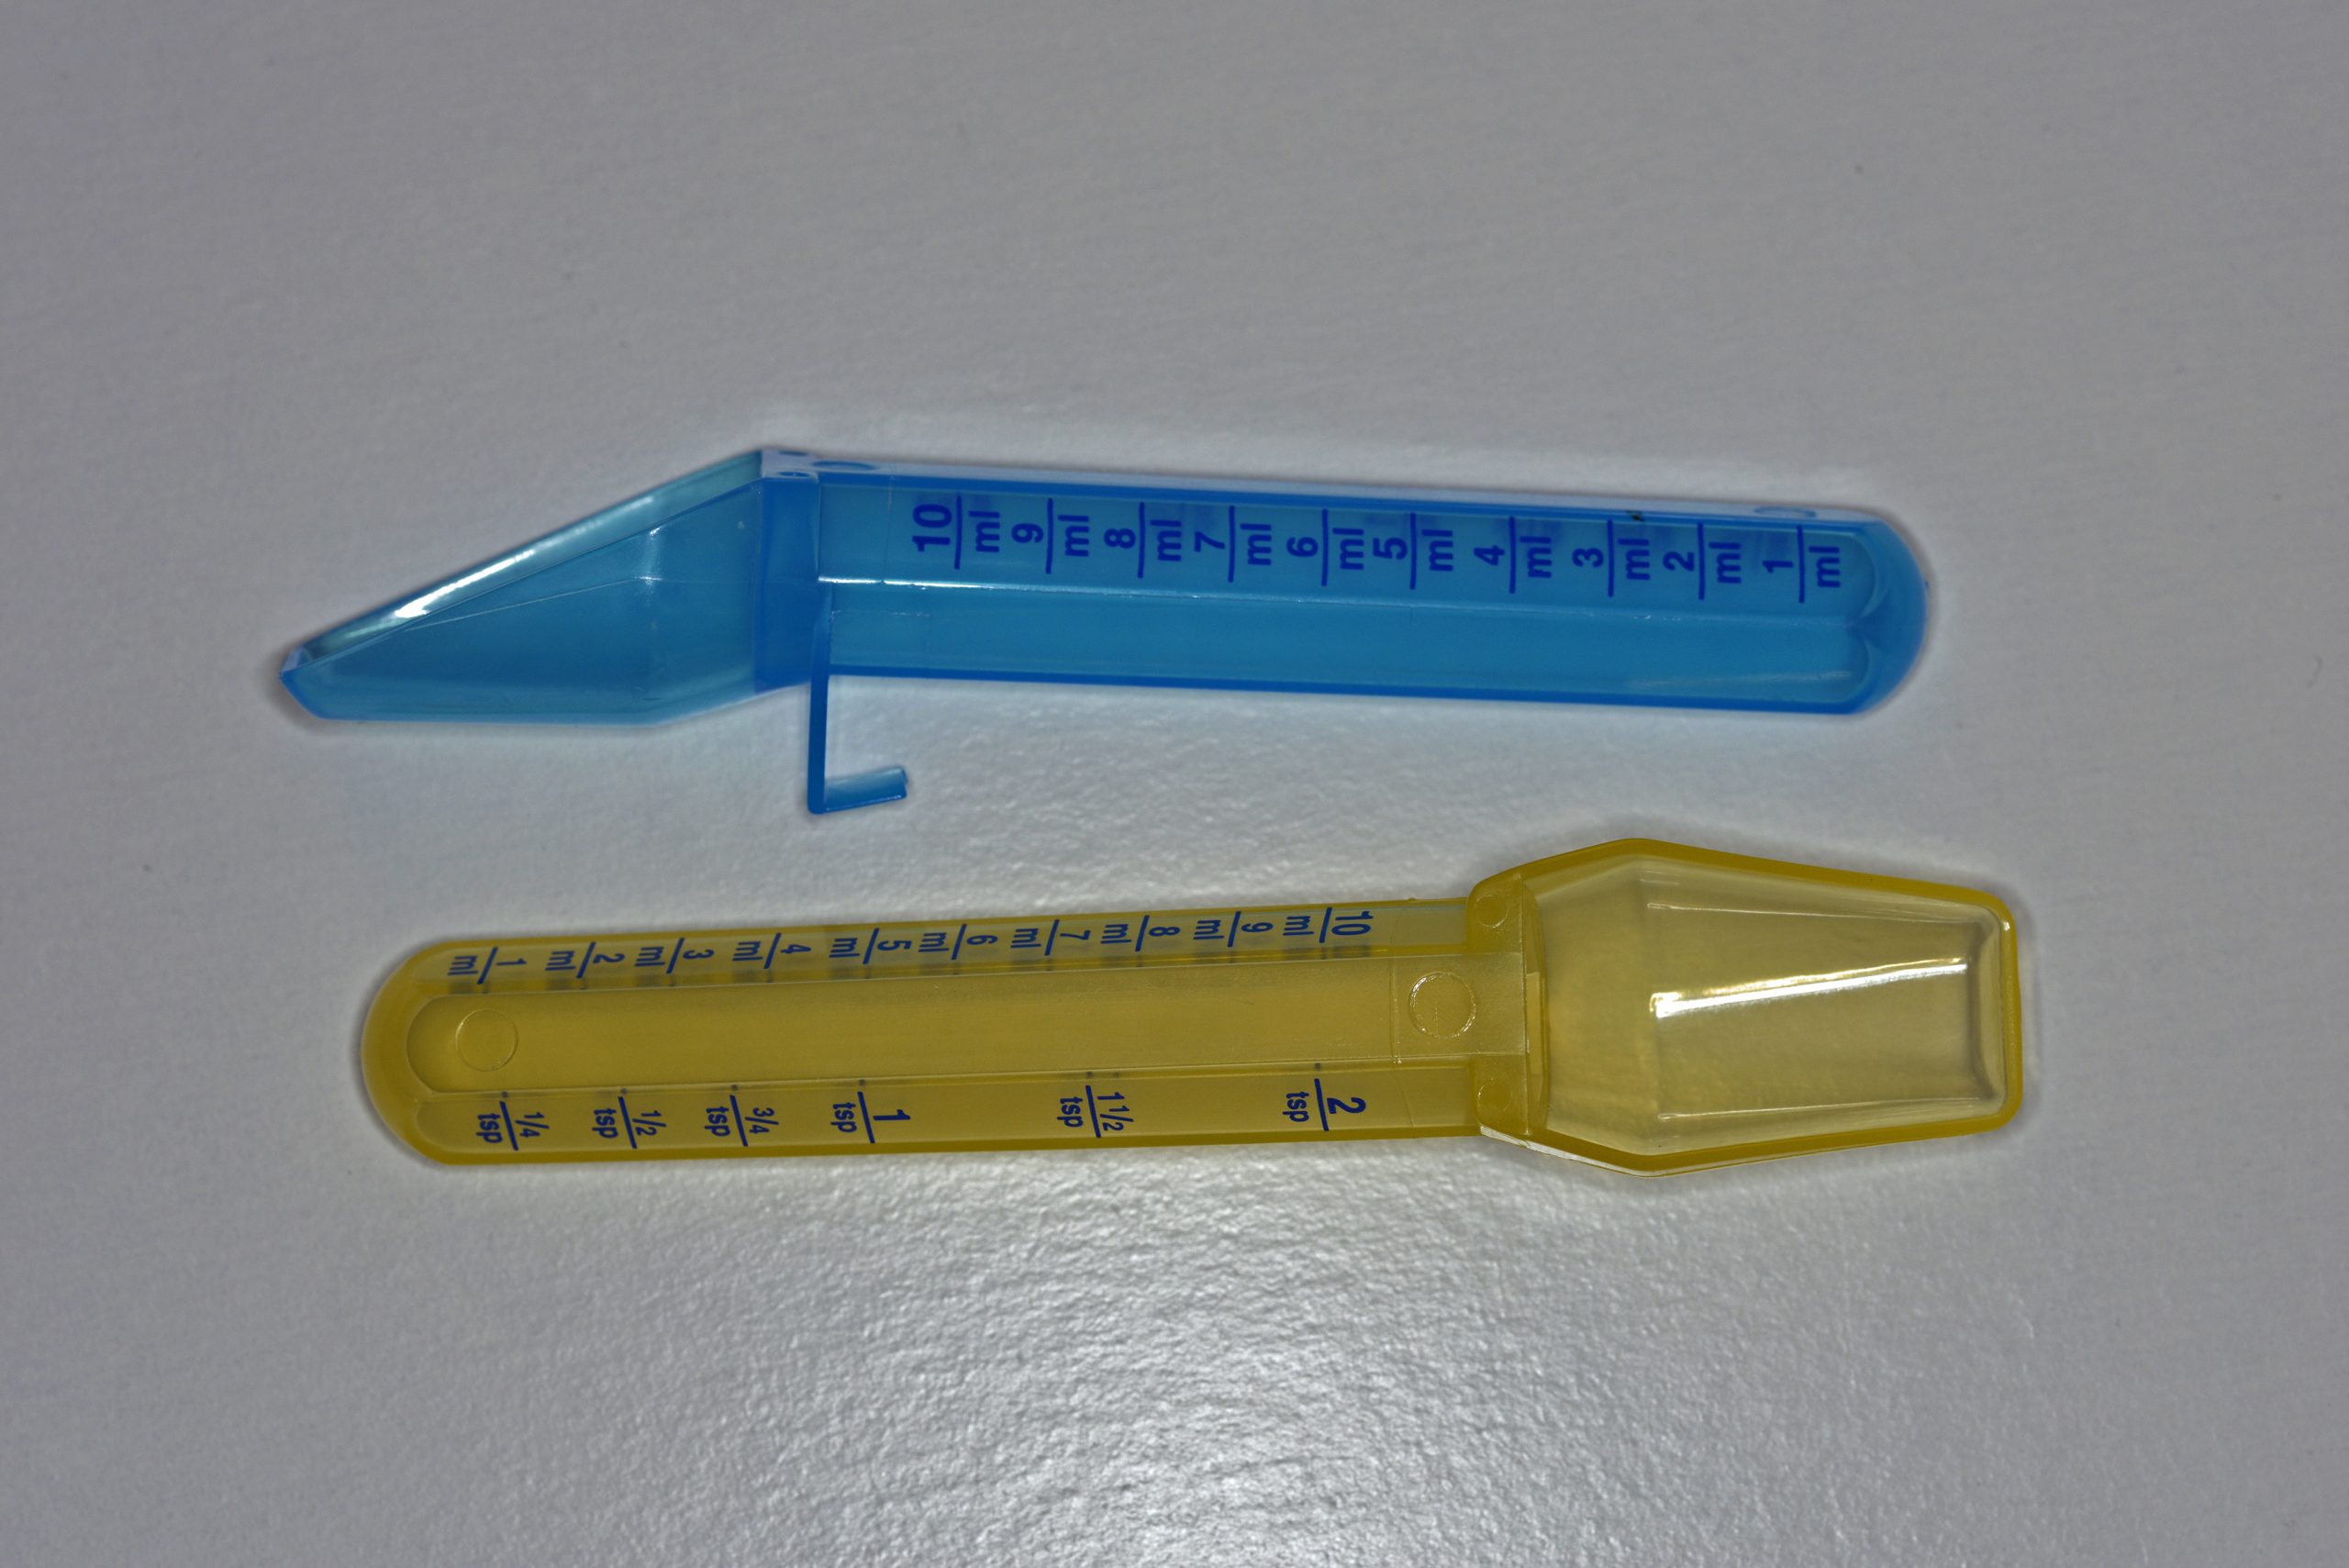 Aquarium Measuring Spoon for Accurate Dosing